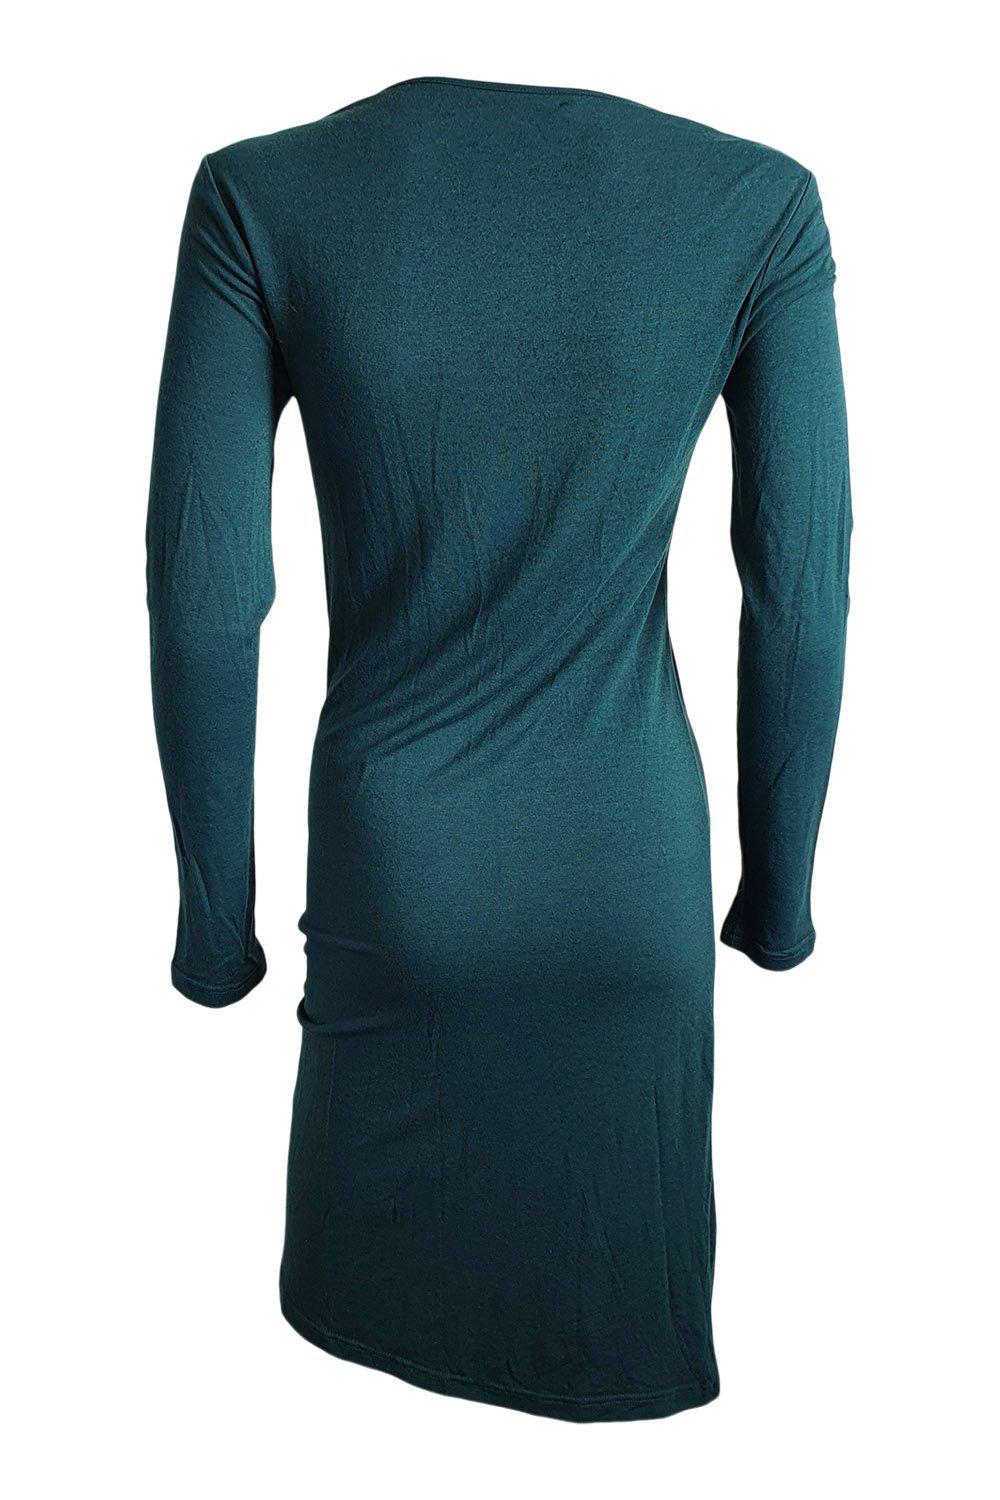 PHARD Green Long Sleeved V Neck Fitted Dress (S)-Phard-The Freperie